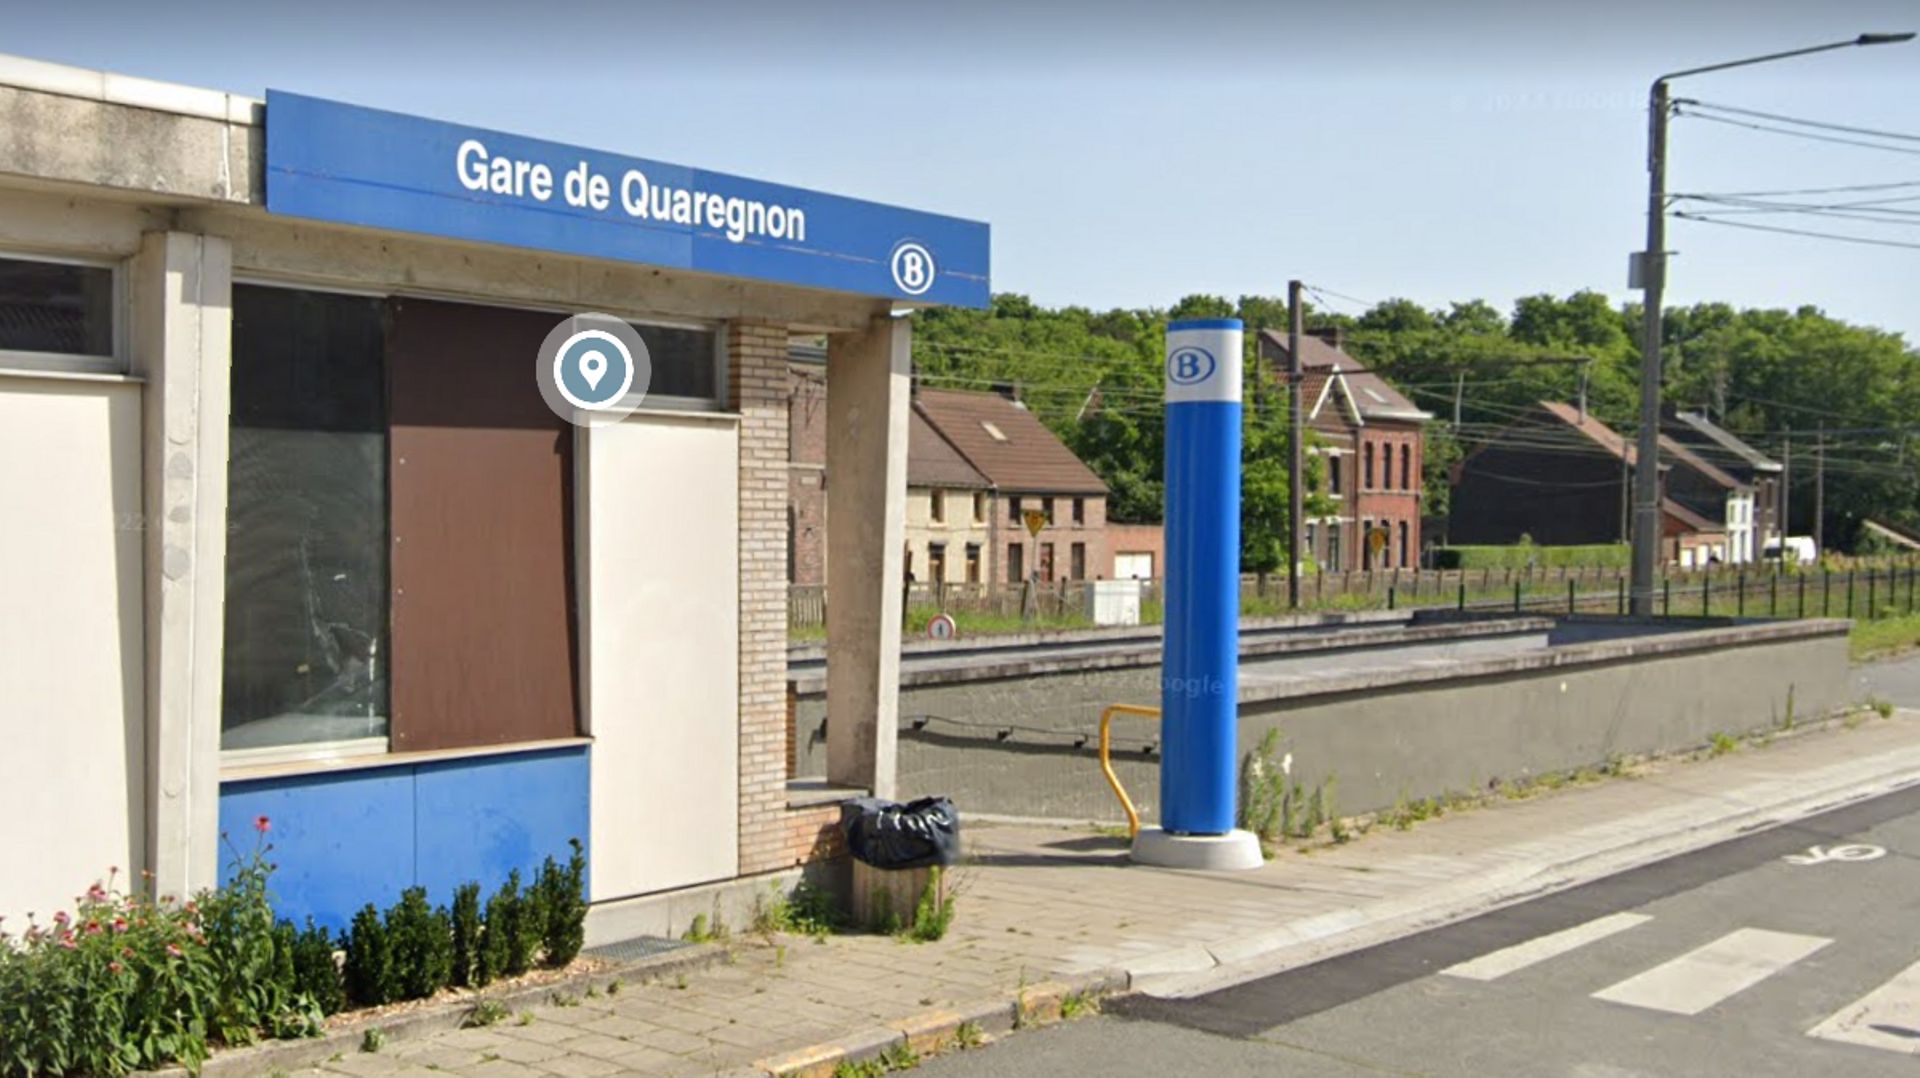 La gare de Quaregnon